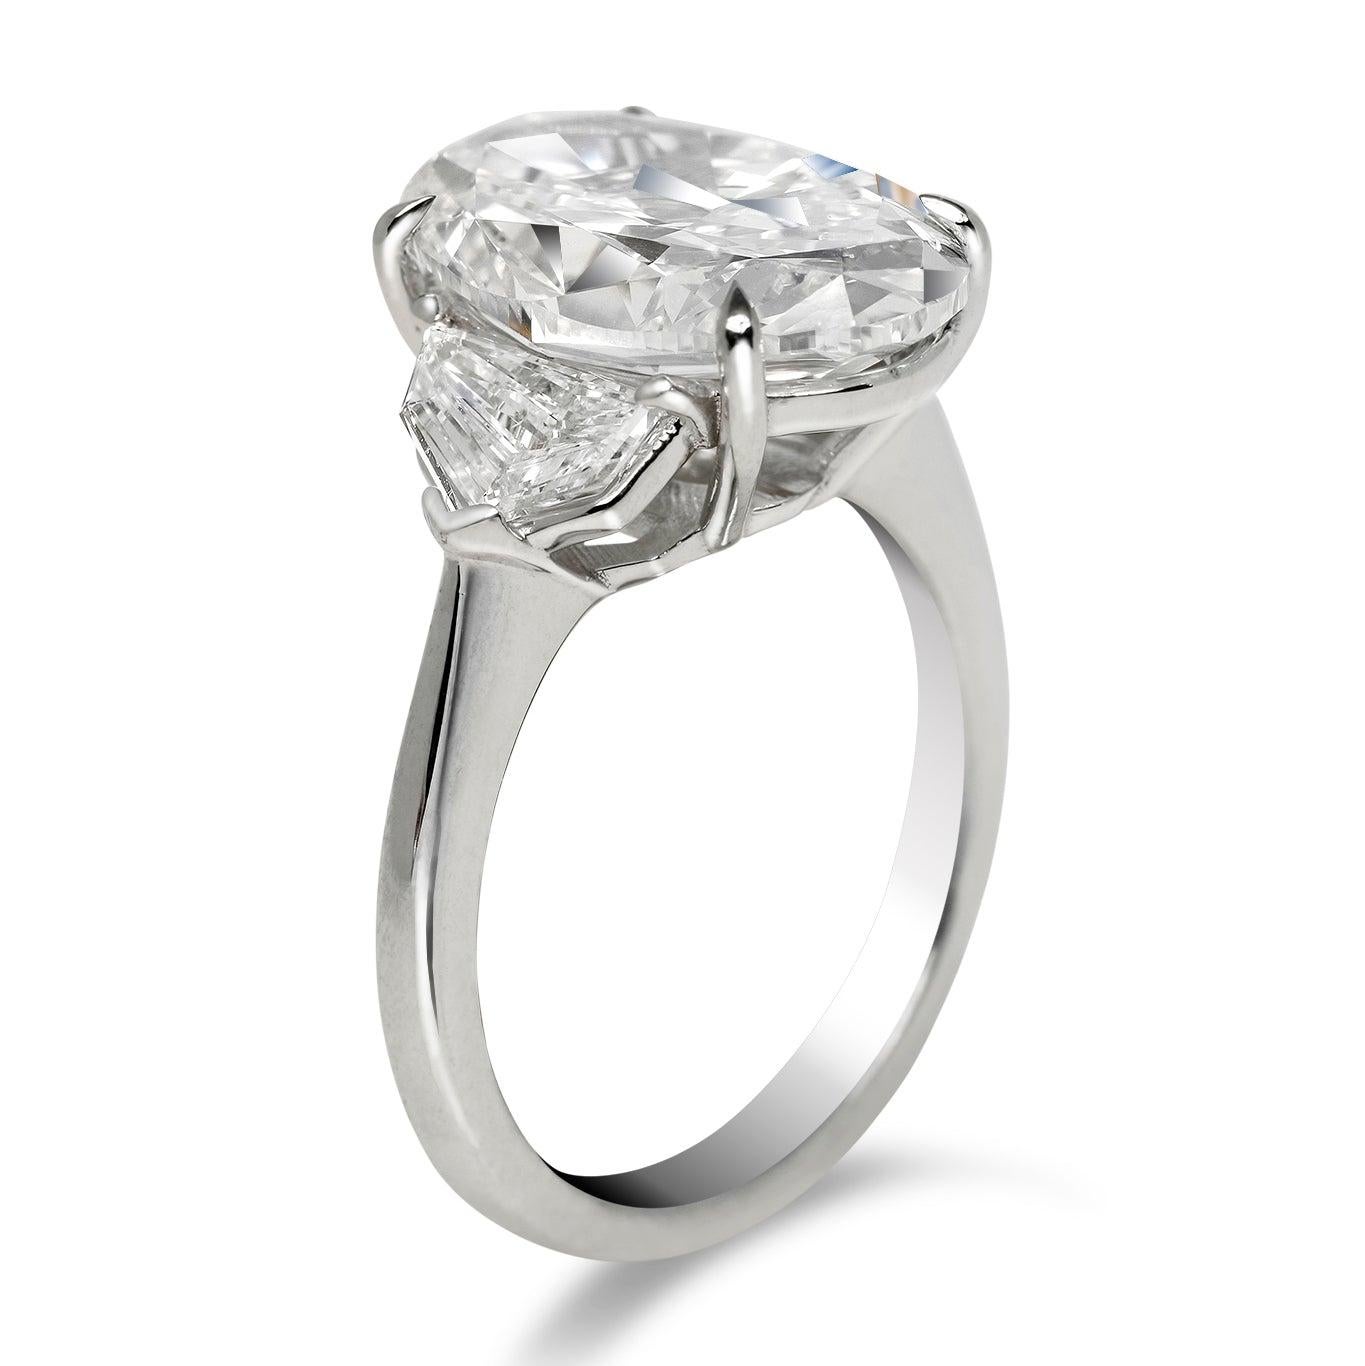 8 carat oval diamond ring